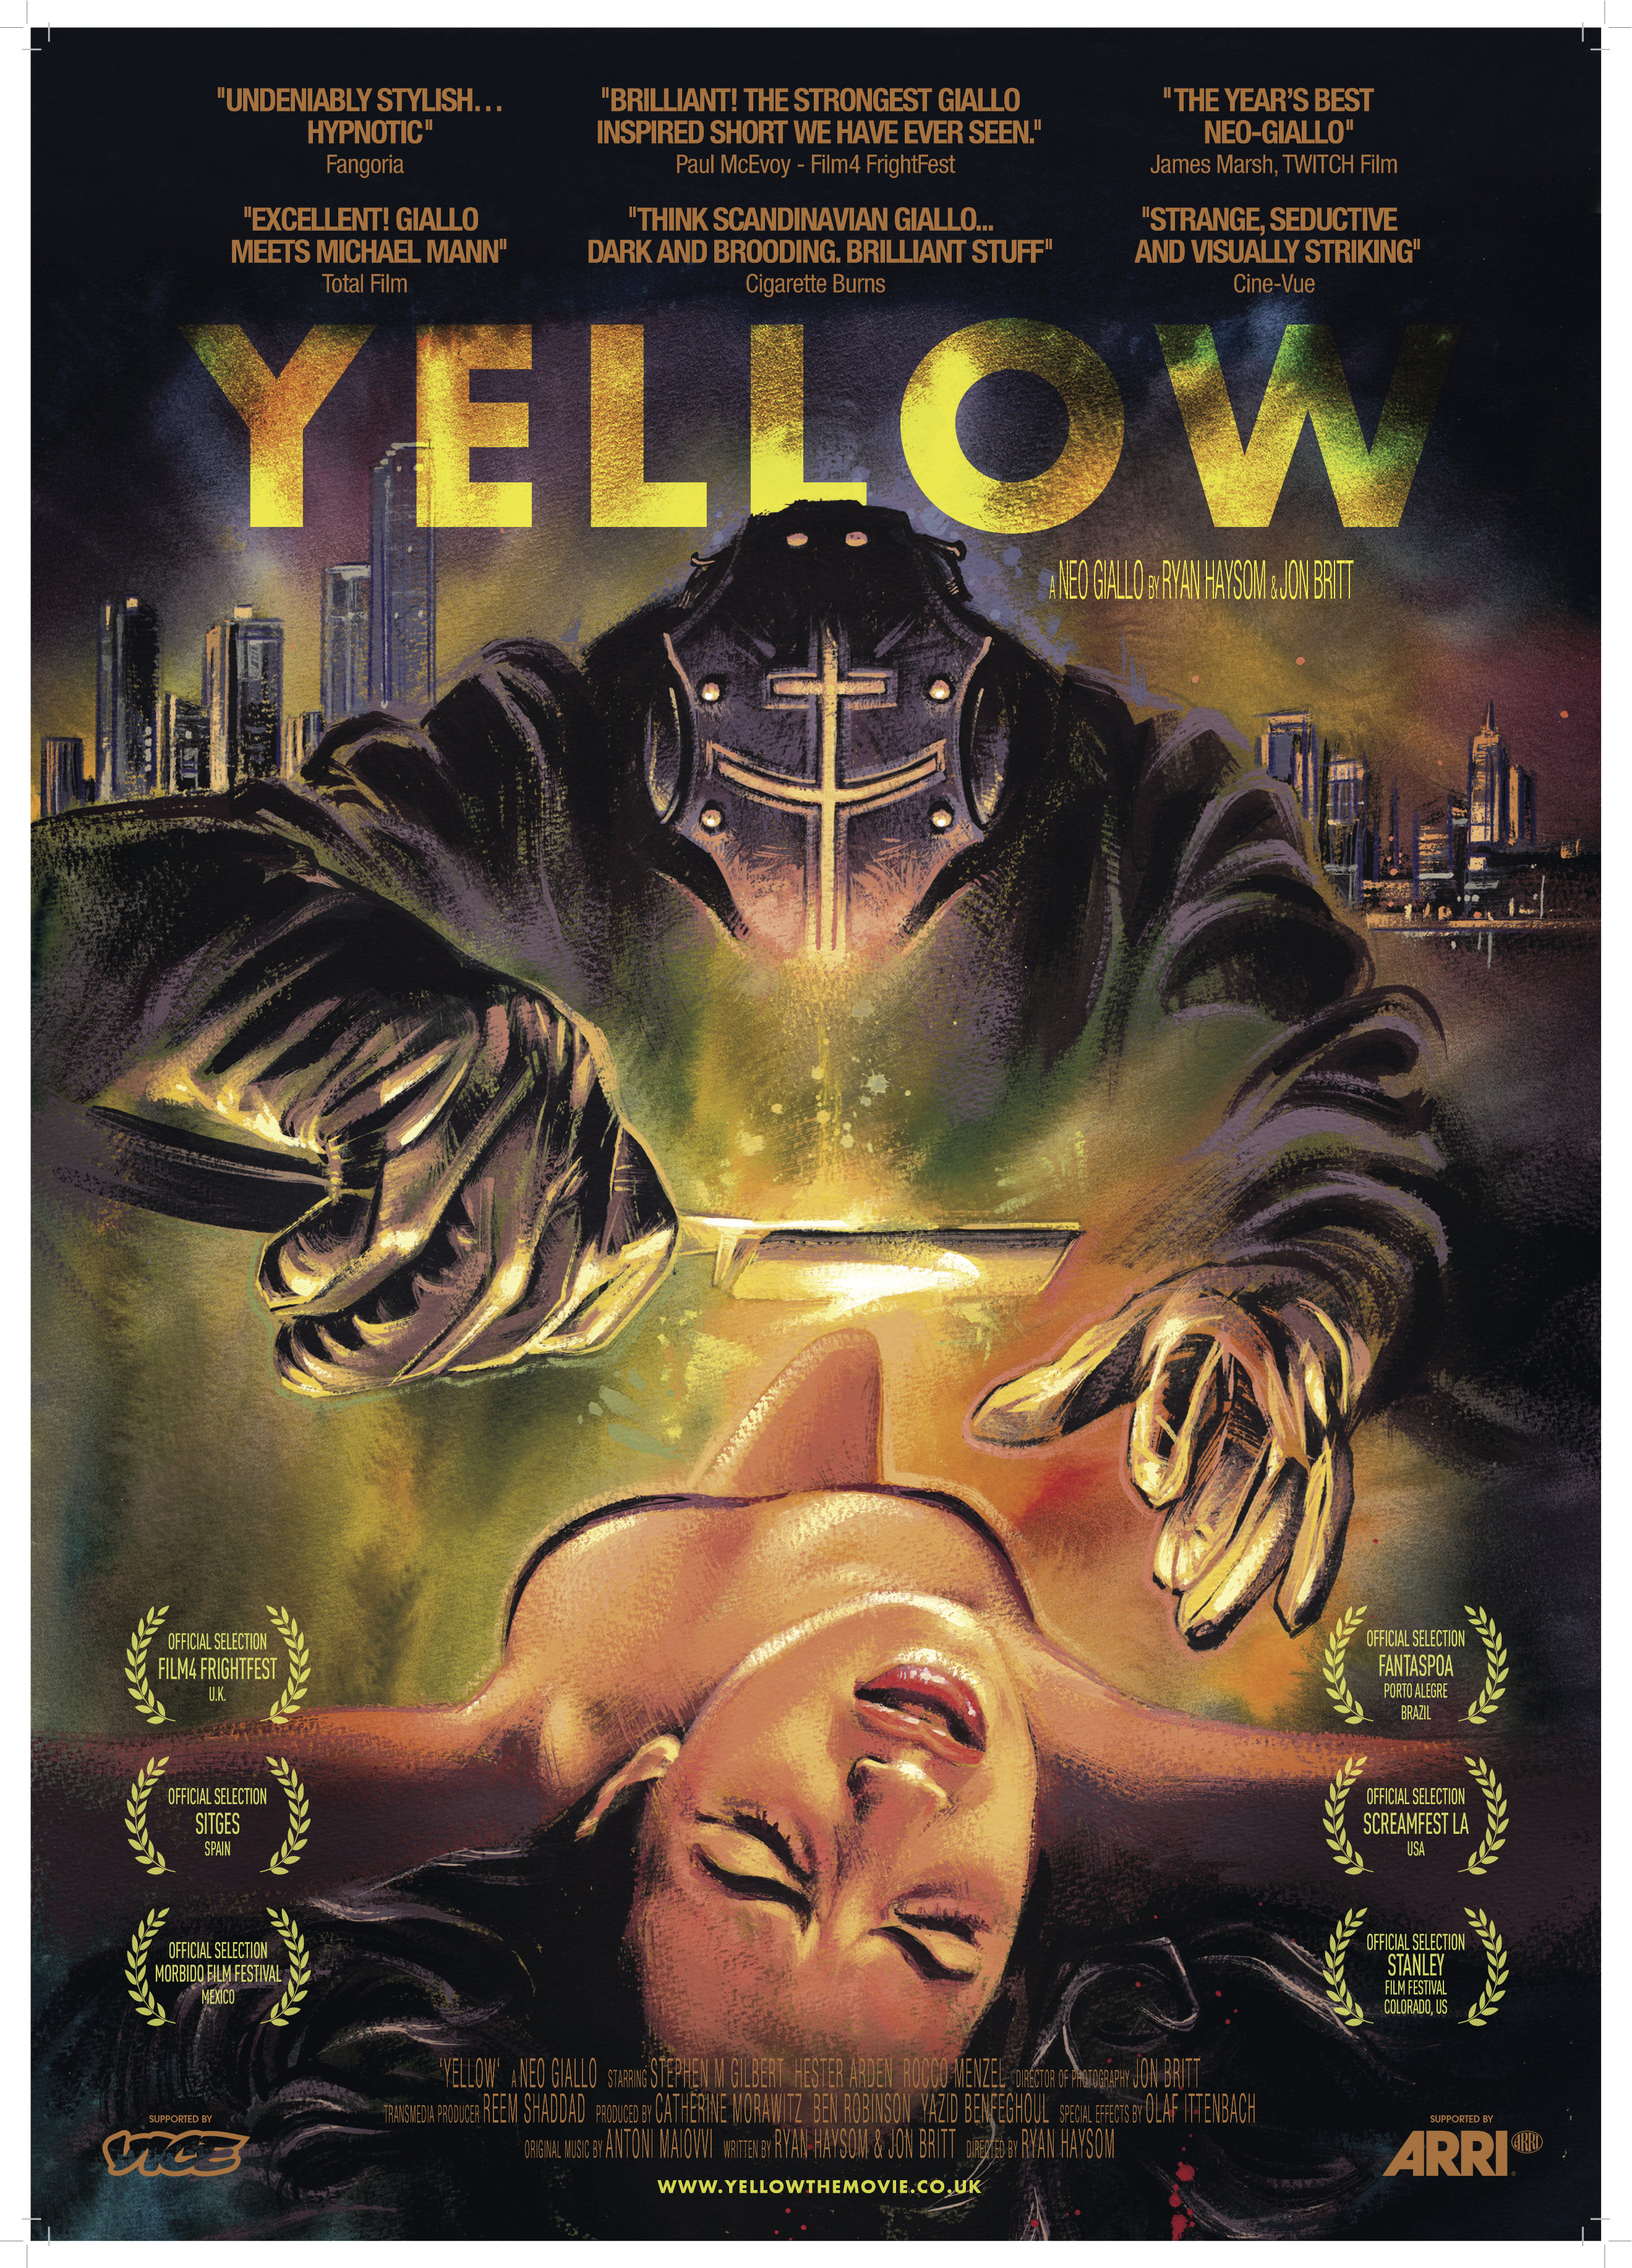 Yellow (2012) Screenshot 1